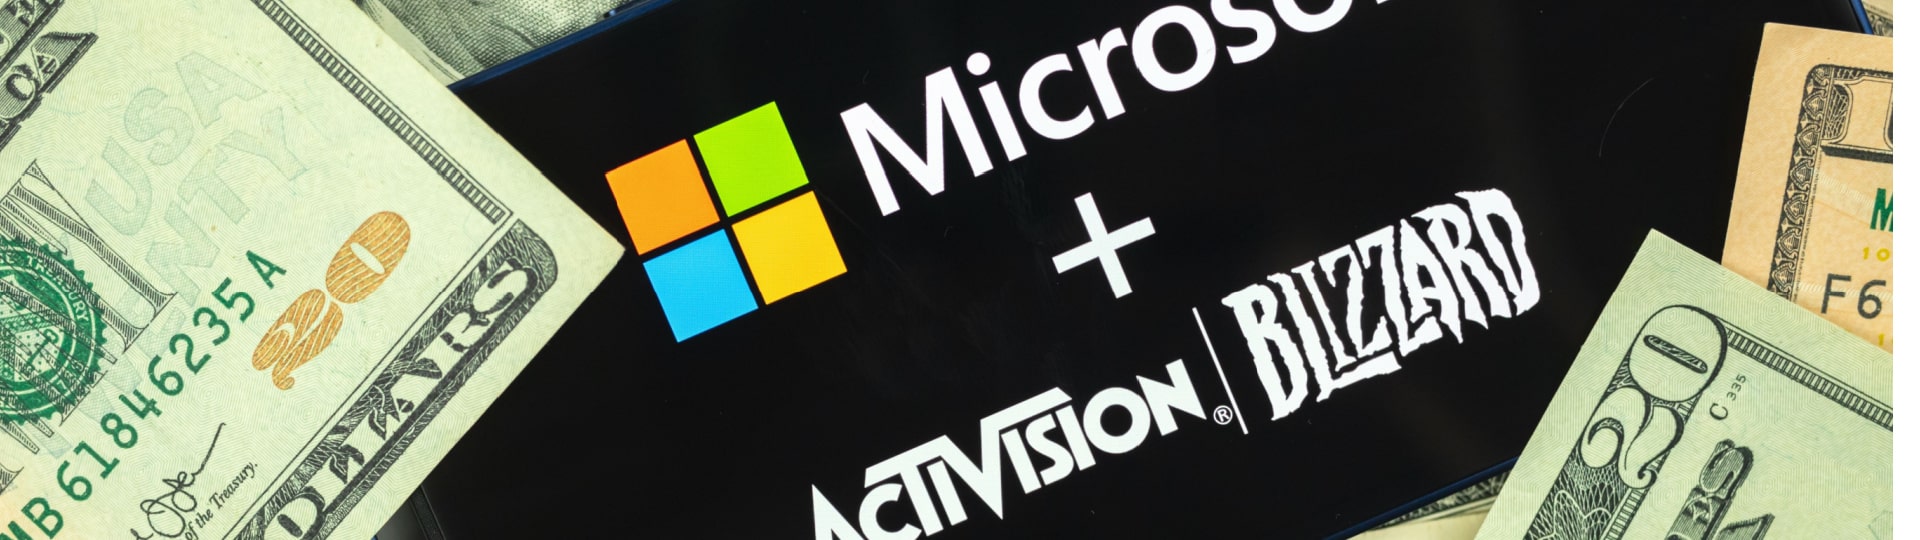 EK schválila převzetí firmy Activision Blizzard Microsoftem